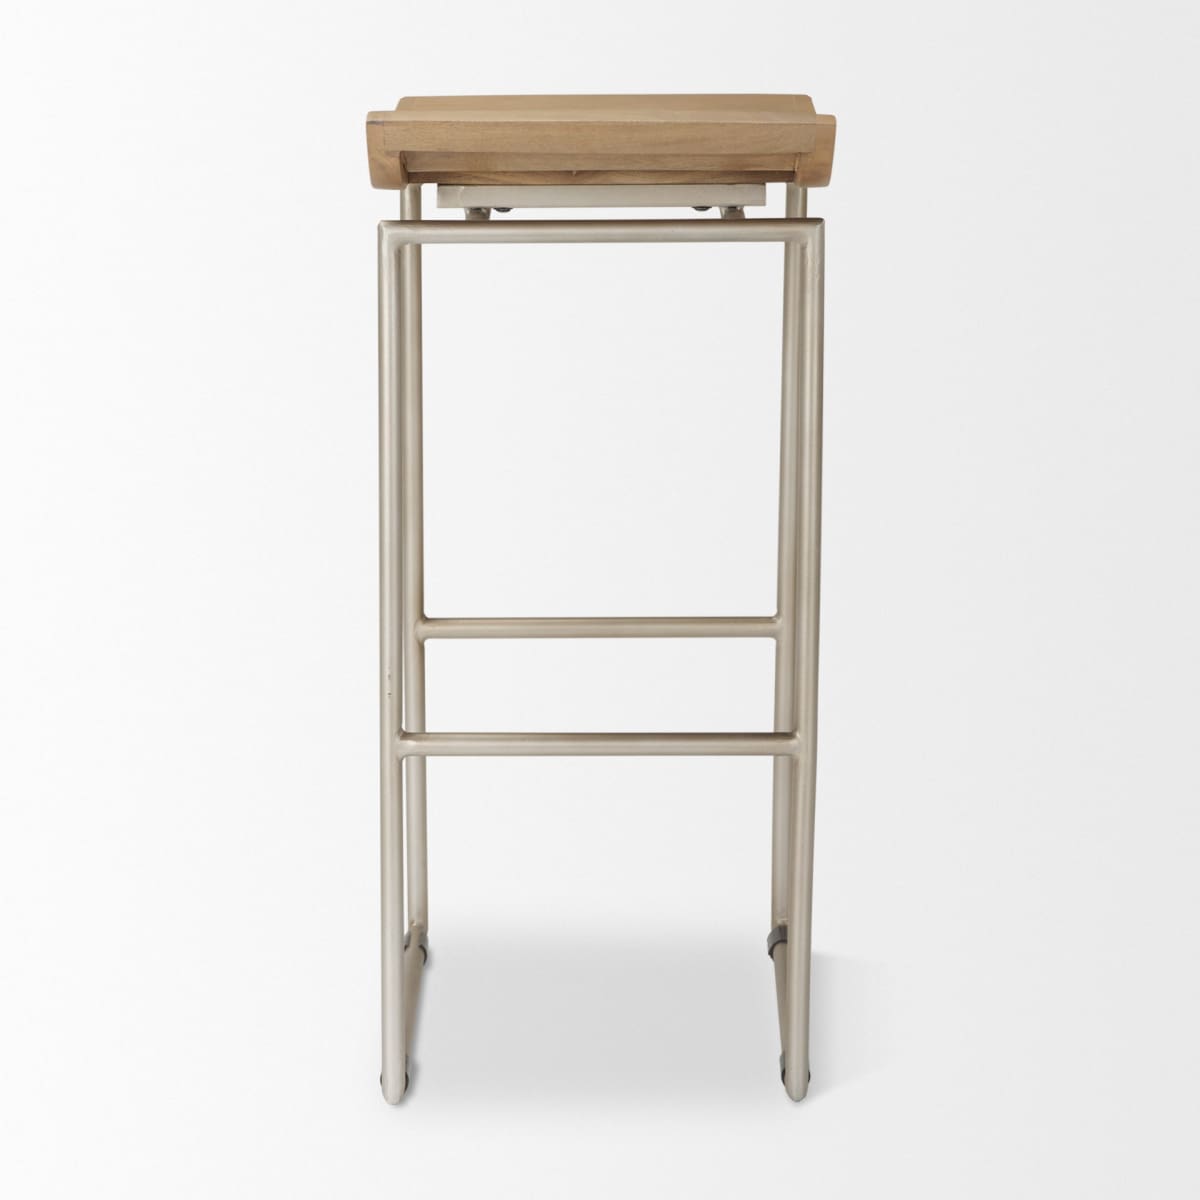 Givens Bar Counter Stool Brown Wood | Silver Metal | Bar - bar-stools